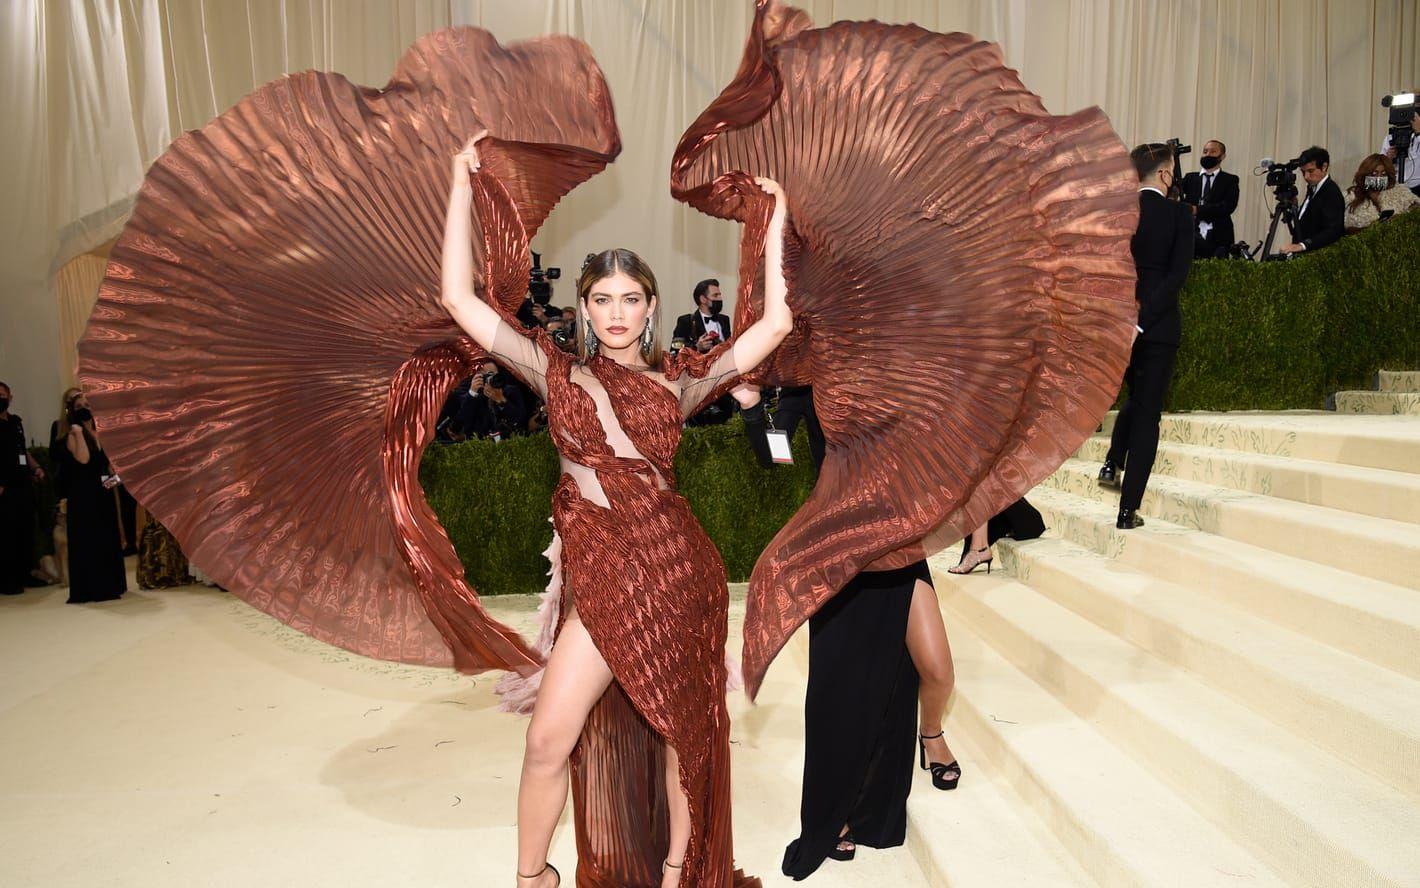 Brasilianska modell och skådespelerskan Valentina Sampaio vecklar ut sin outfit vid entrén till The Met i New York.